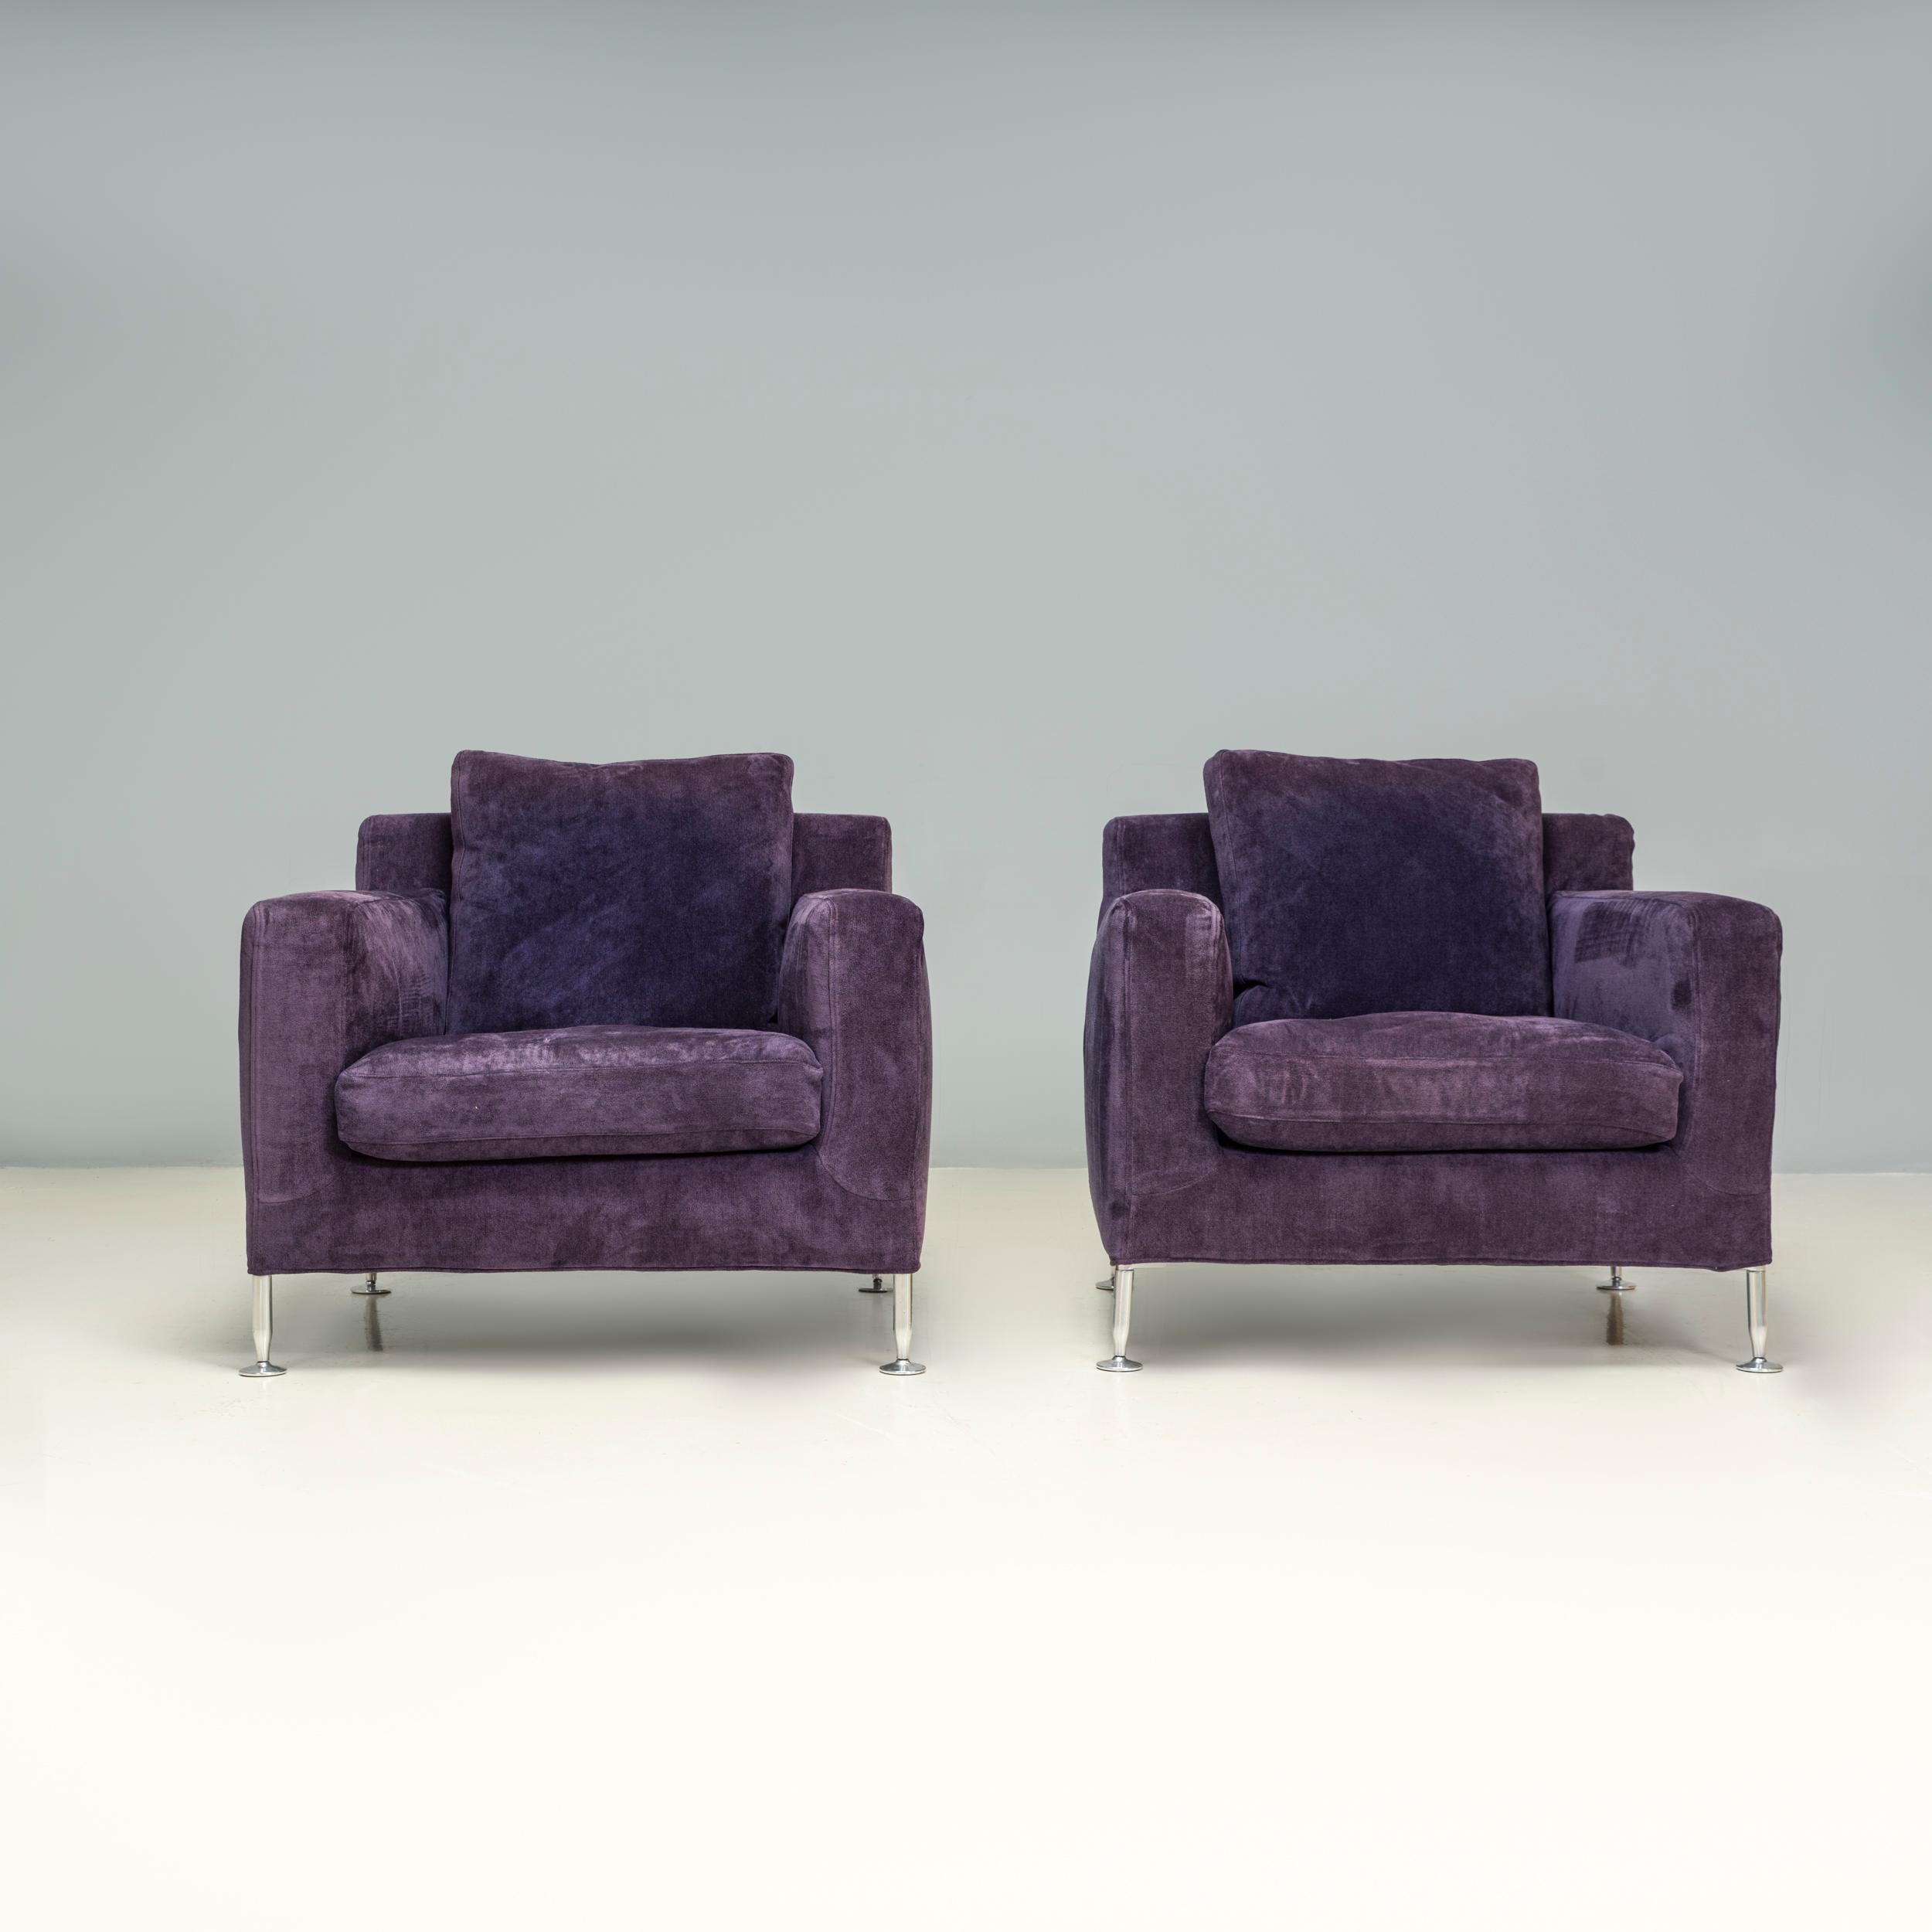 Conçu à l'origine par Antonio Citterio pour B&B Italia en 1995, le fauteuil Harry porte le nom du célèbre artiste et designer de meubles Harry Bertoia.

D'un style traditionnel avec une silhouette en forme de boîte, cet ensemble de fauteuils a reçu